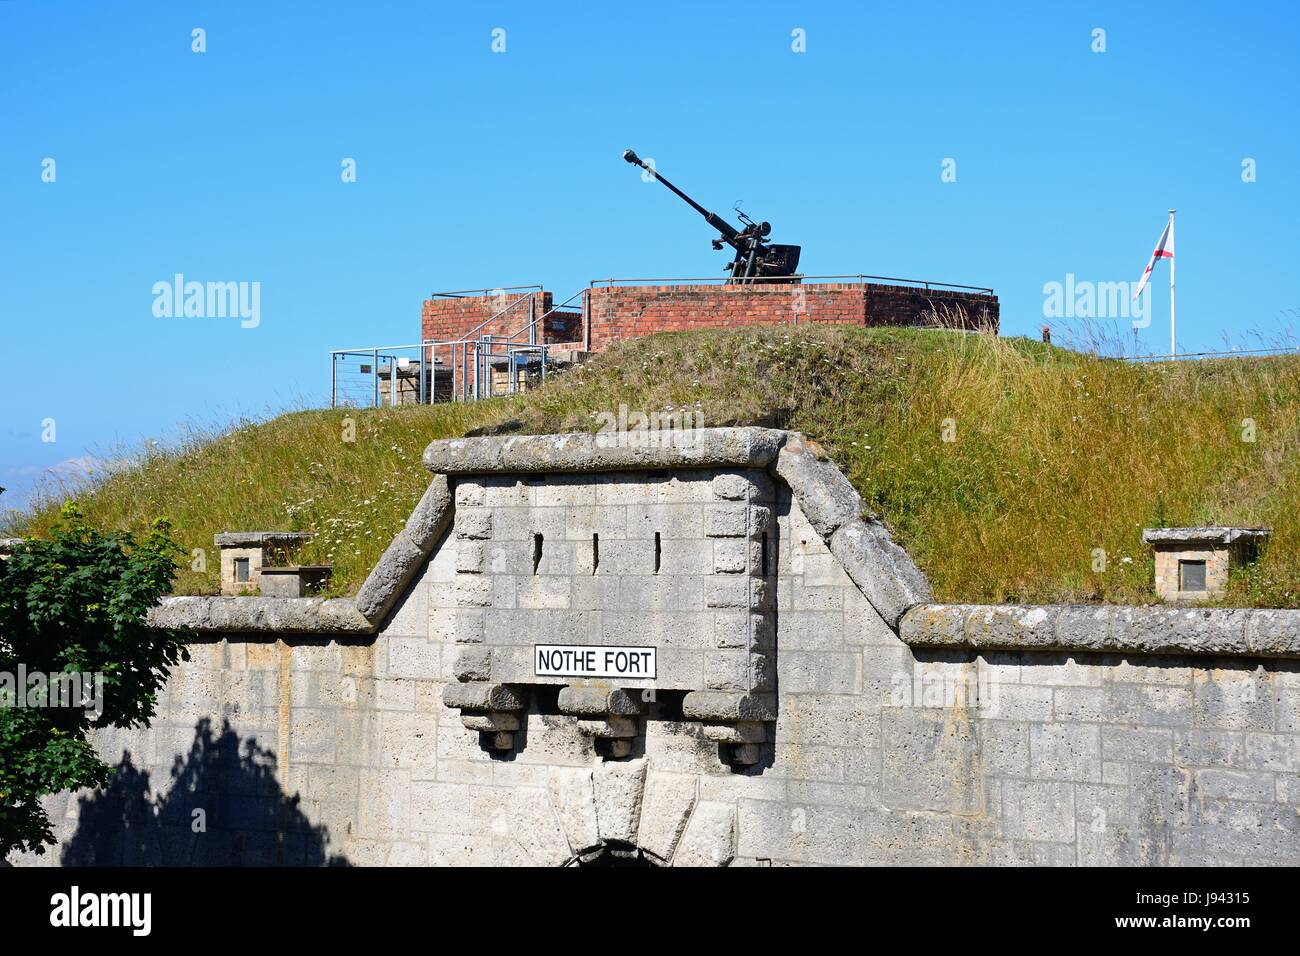 Ingresso a Nola Fort con una torretta mitragliatrice sopra, Weymouth Dorset, Inghilterra, Regno Unito, Europa occidentale. Foto Stock